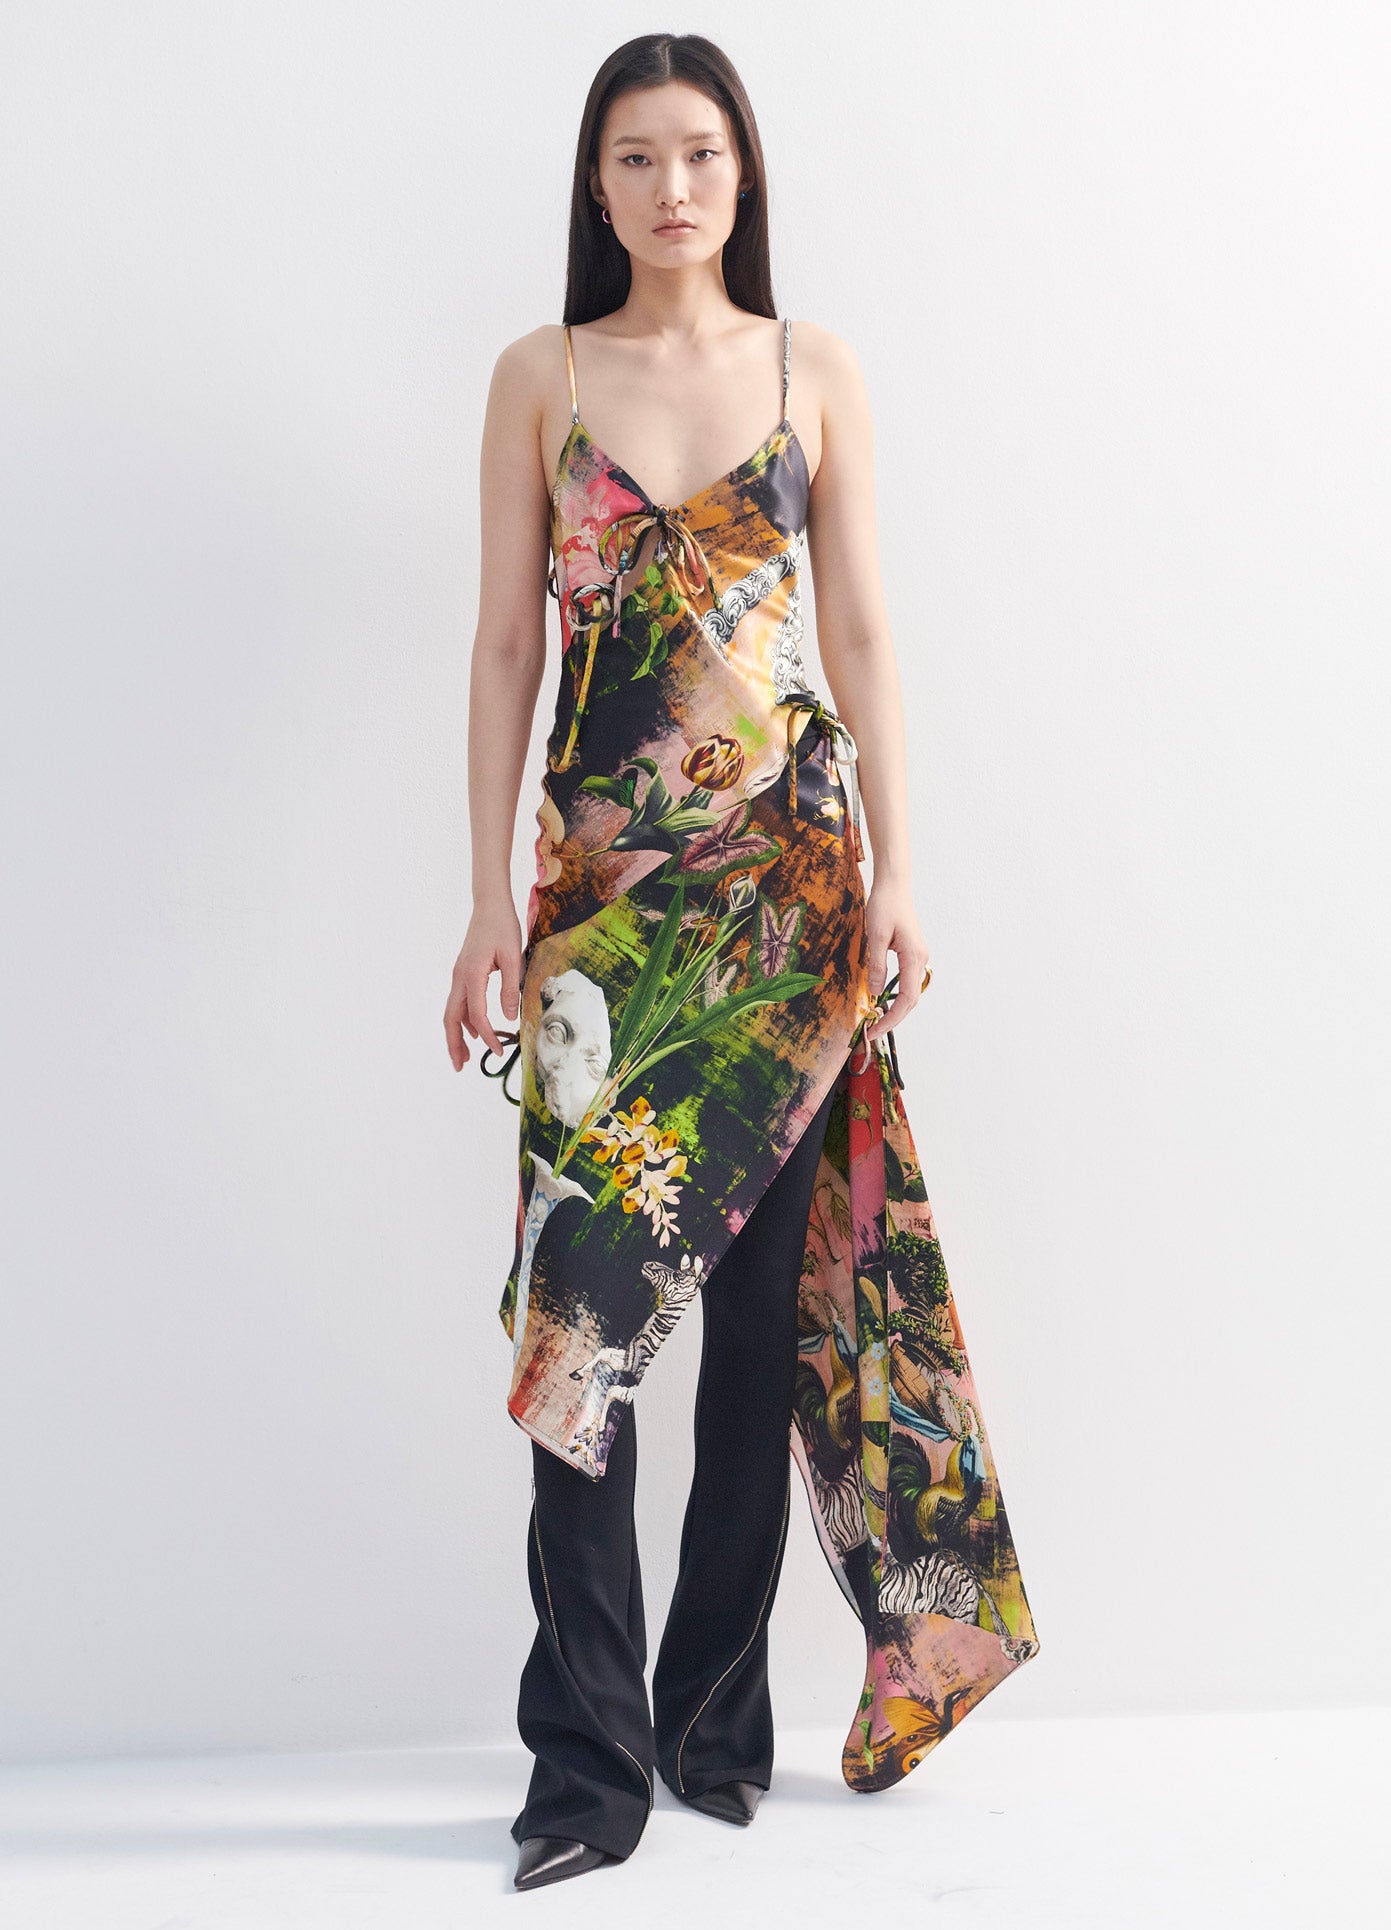 MONSE Print Slip Dress in Print Multi on Model Full Front View